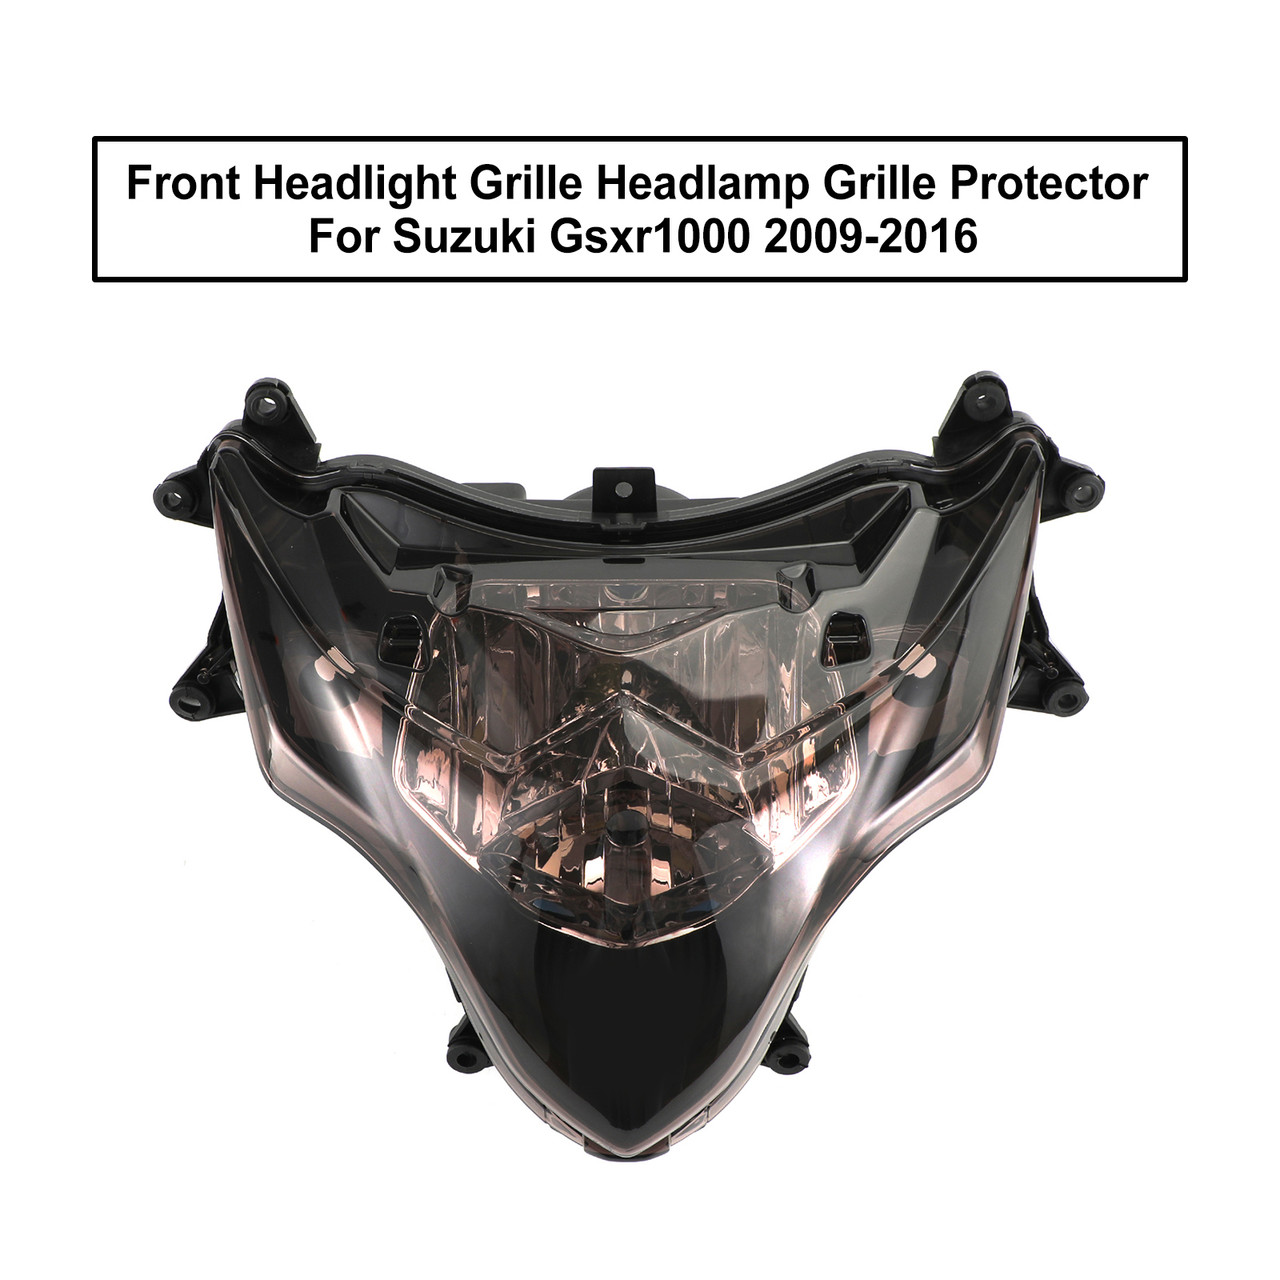 Front Headlight Grille Headlamp Grille Case Clear For Suzuki Gsxr1000 09-16 K9